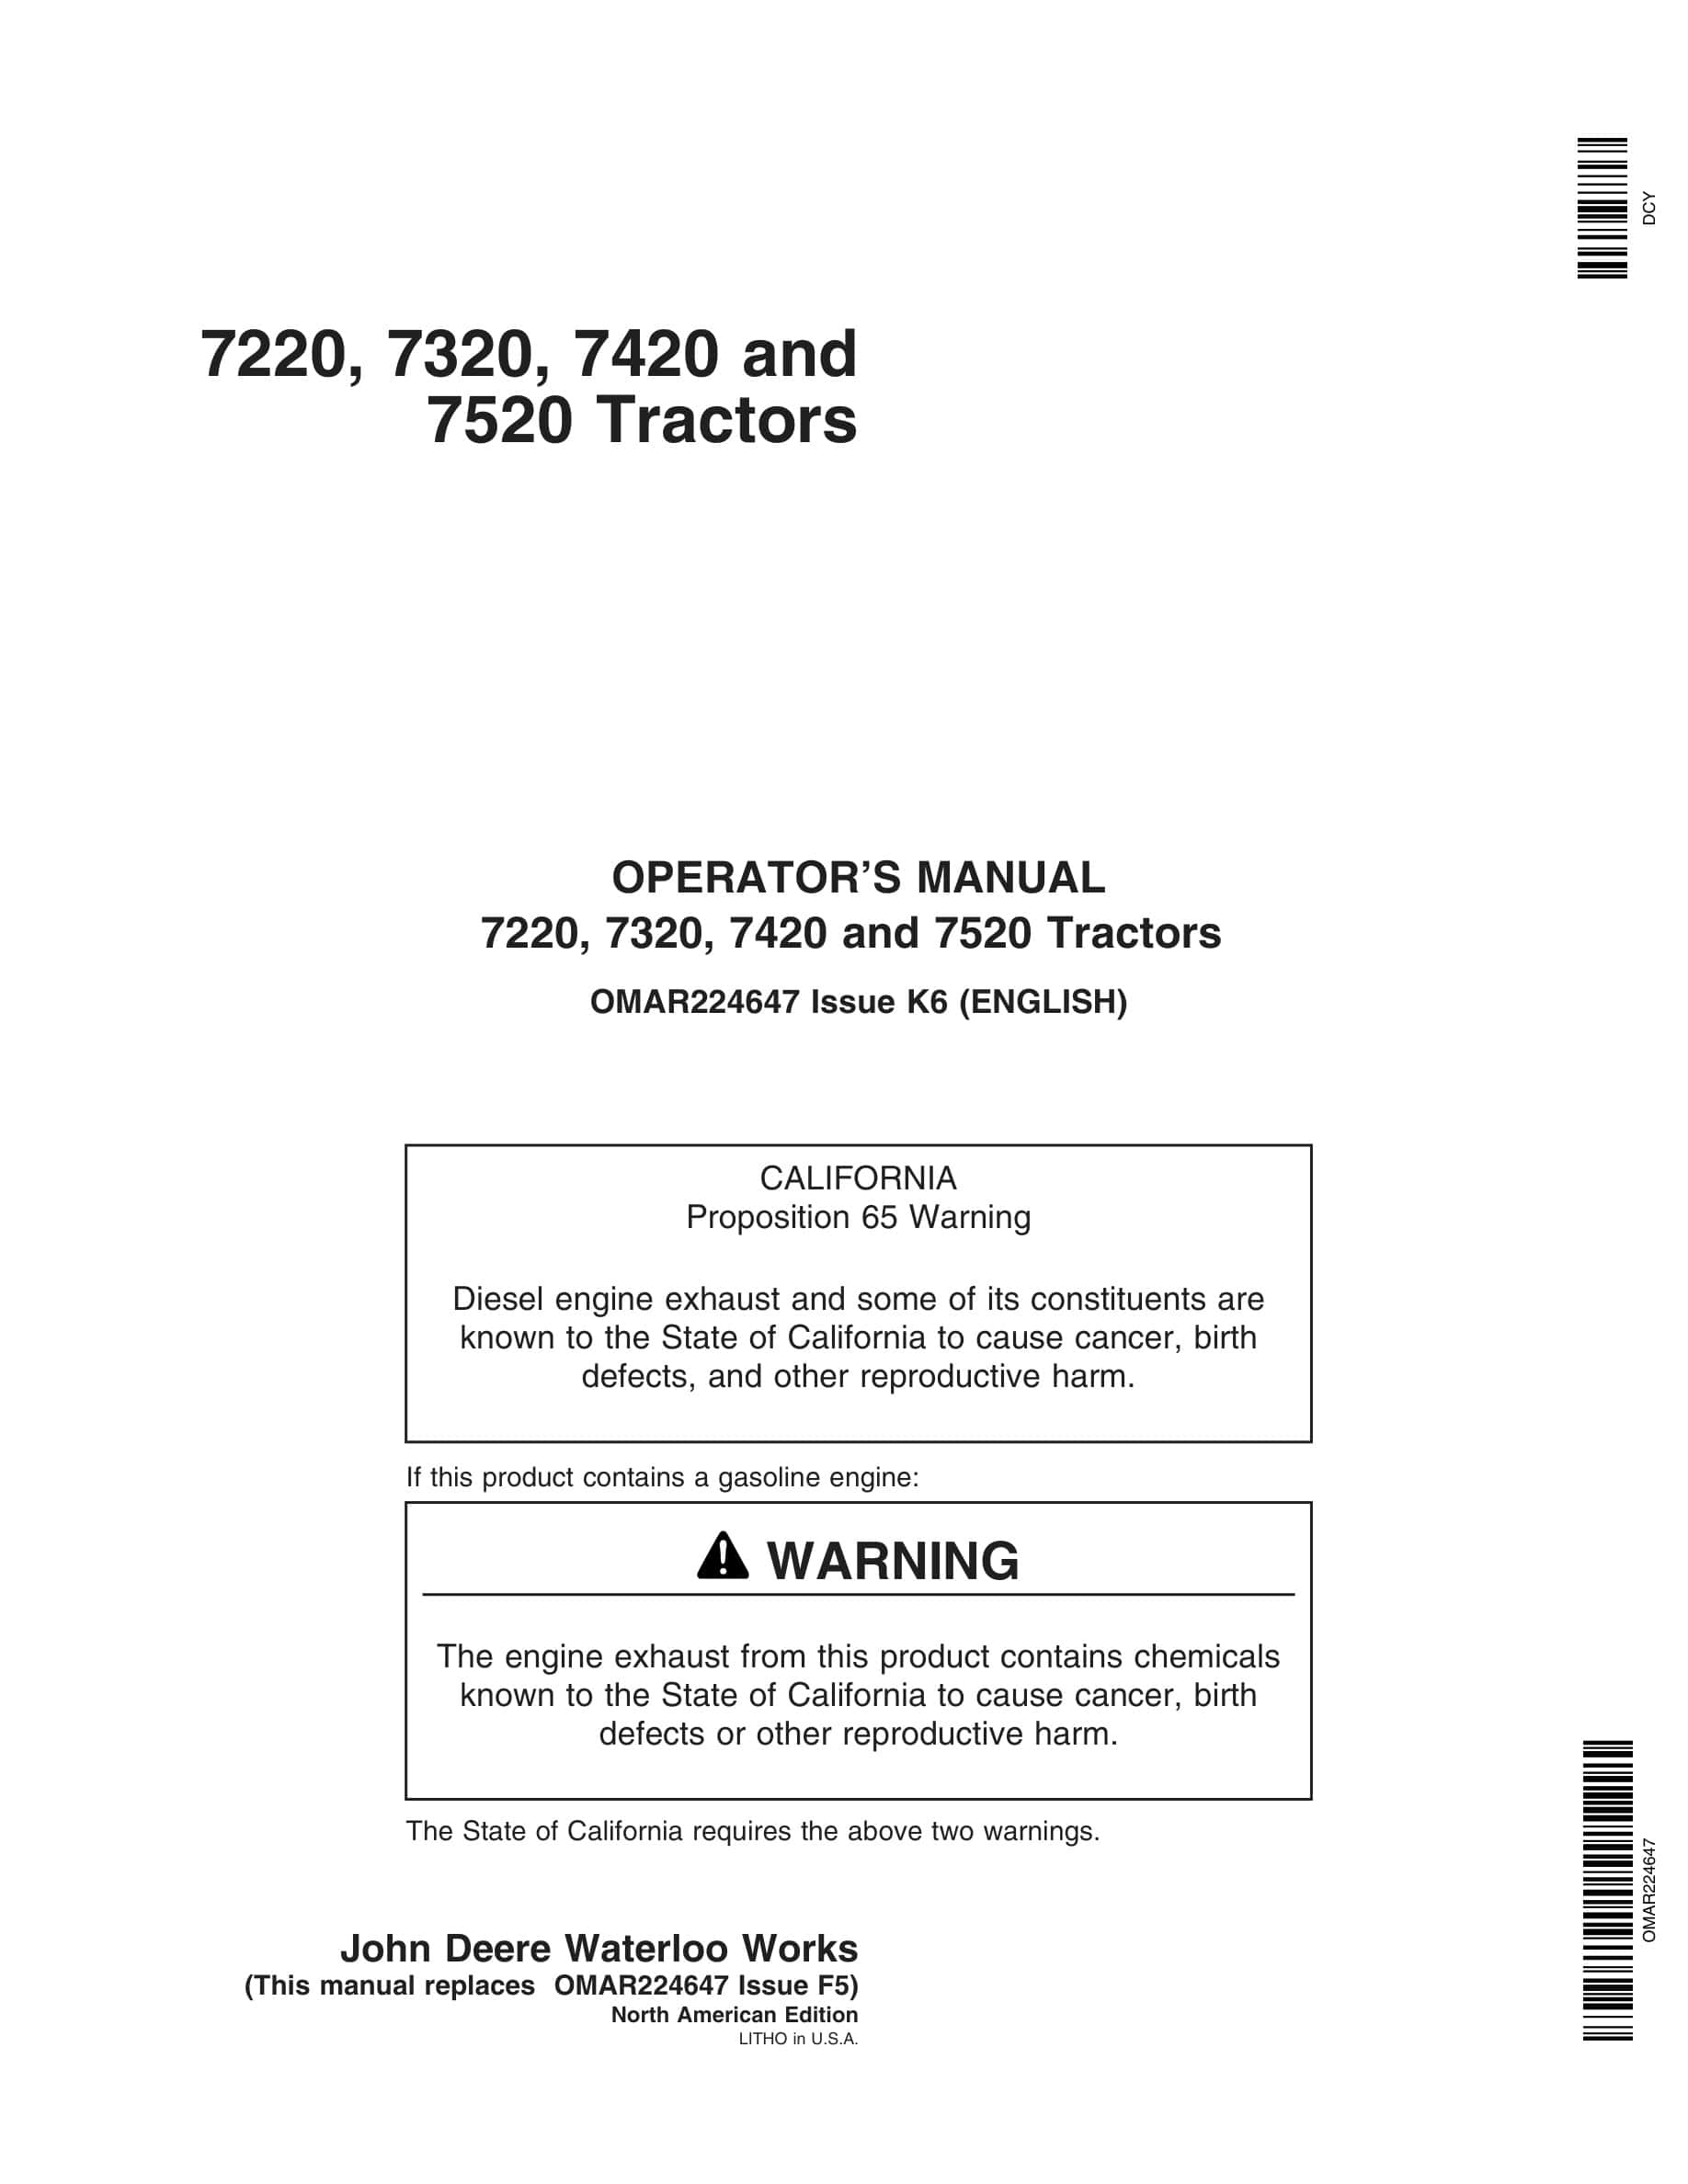 John Deere 7220, 7320, 7420 and 7520 Tractor Operator Manual OMAR224647-1